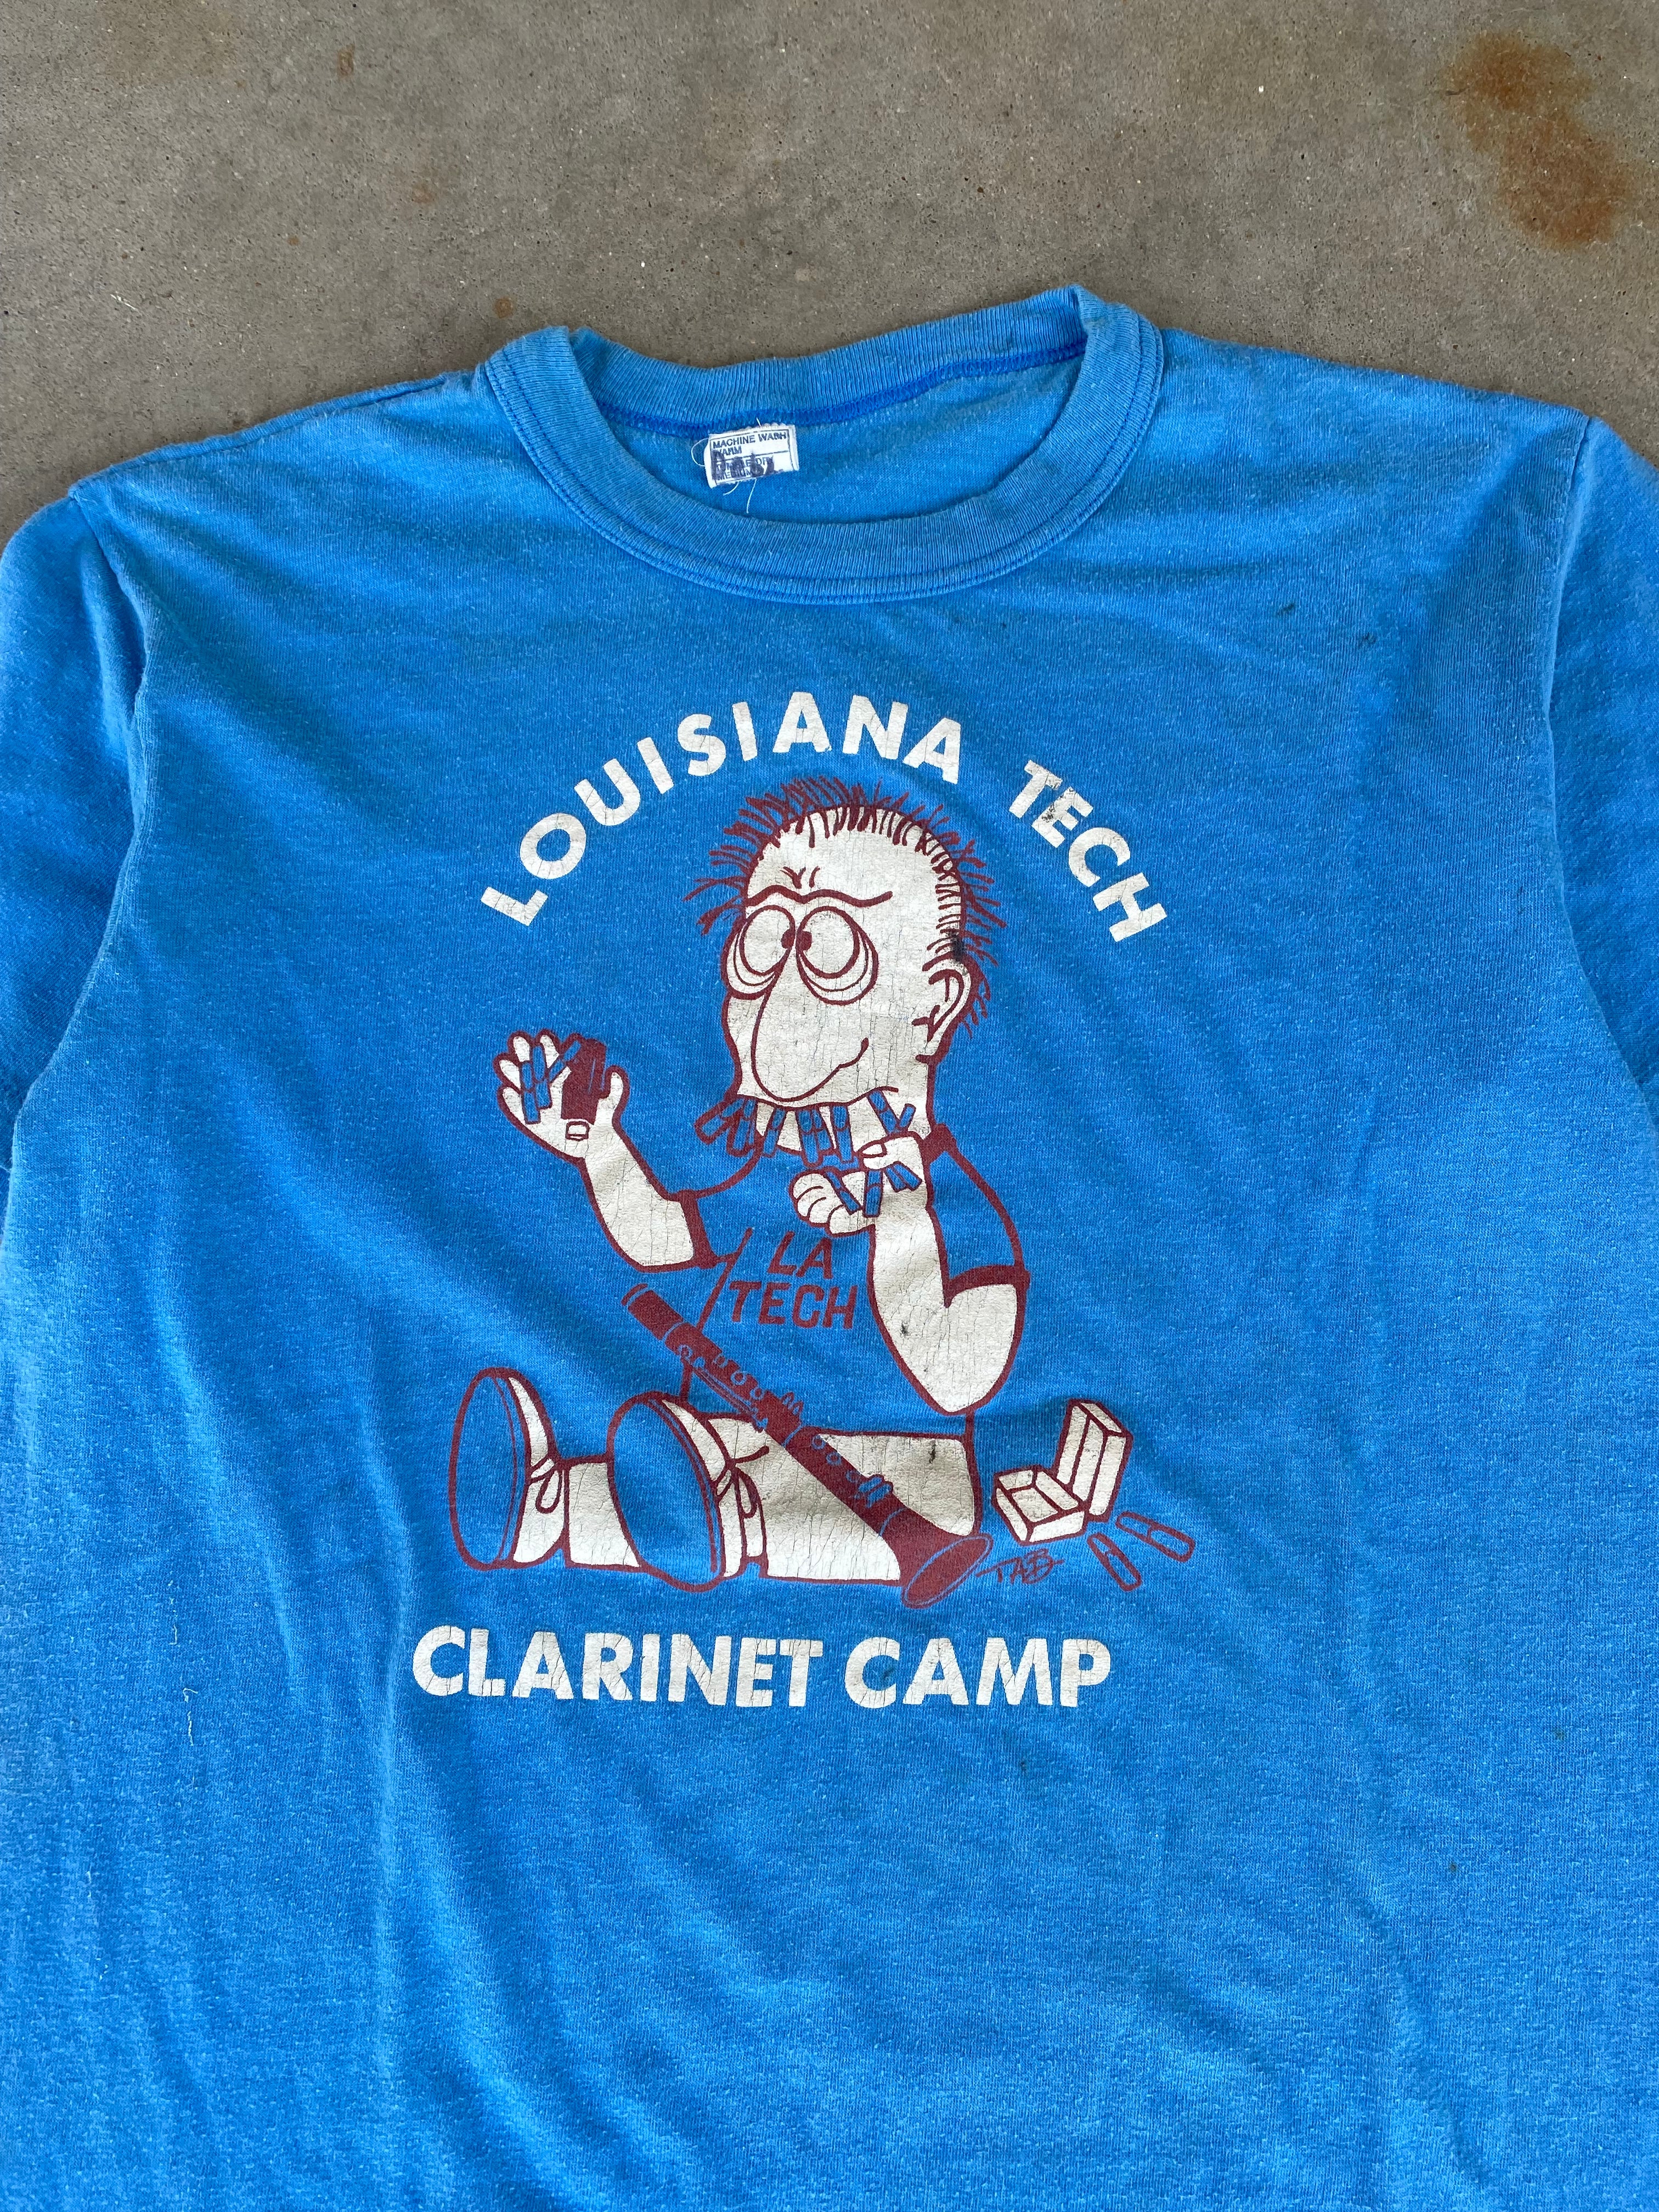 1980s Louisiana Tech Clarinet Camp T-Shirt (S)